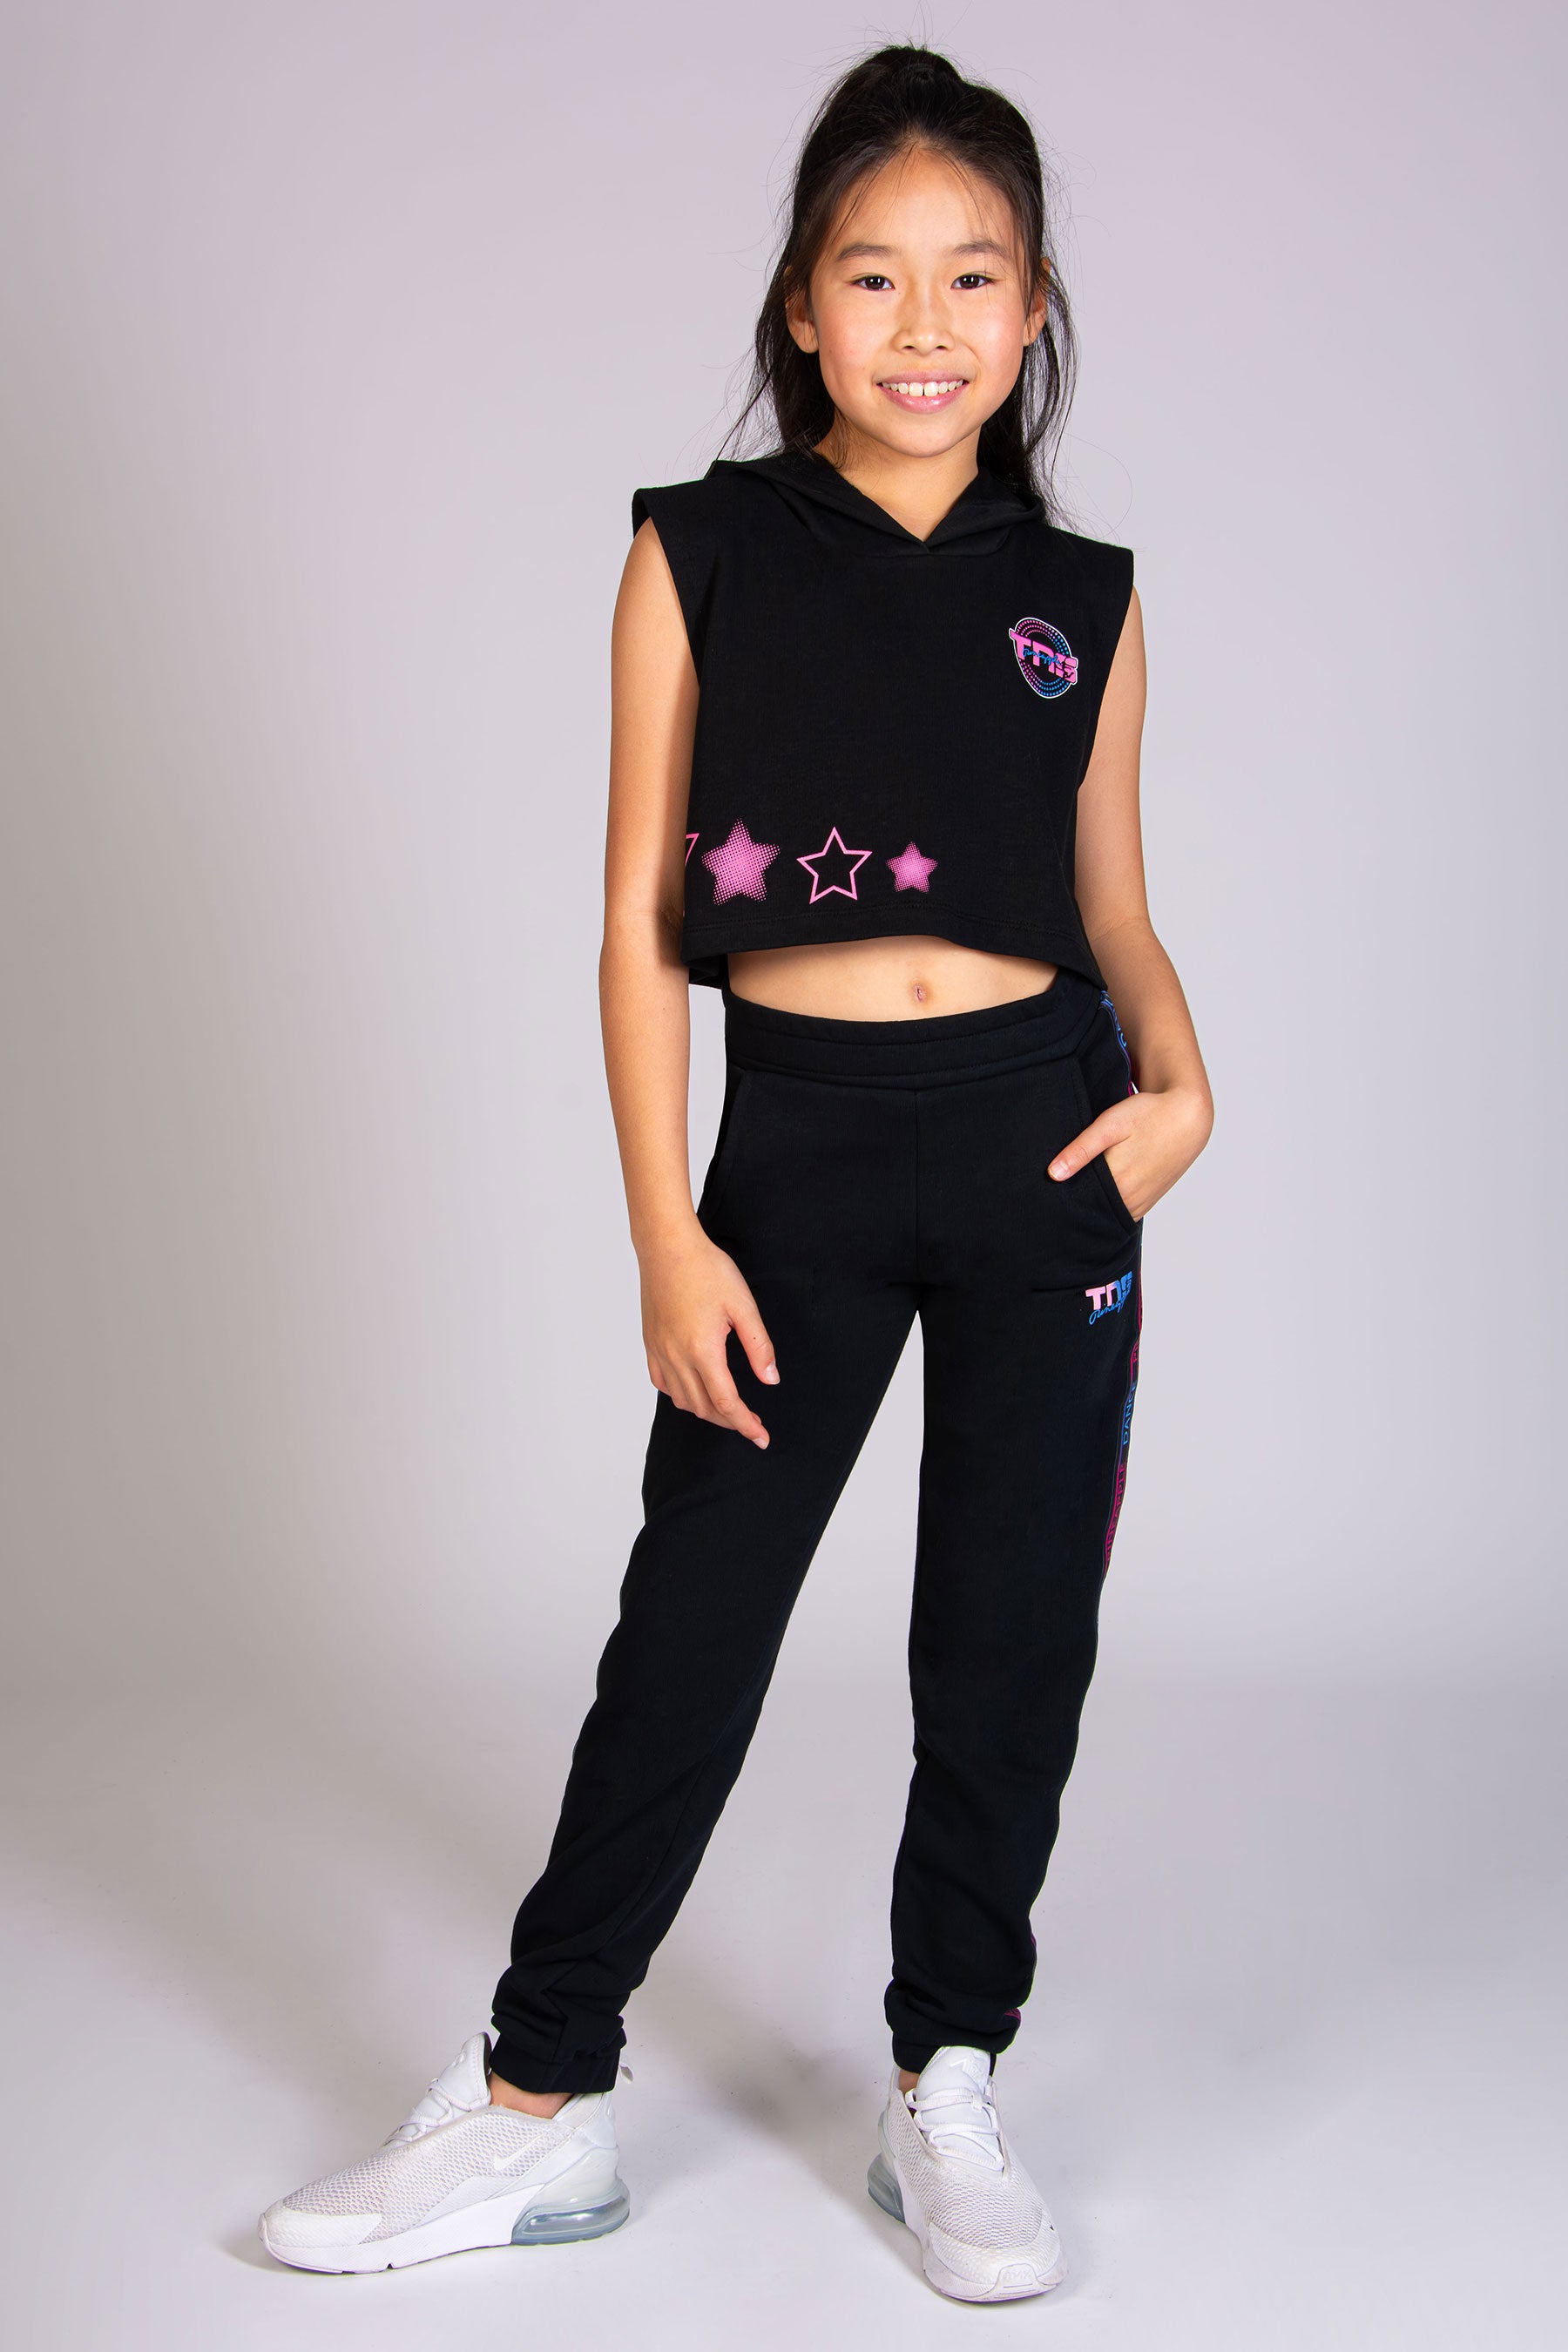 Girls' Vests & Crop Tops, Children's Dancewear